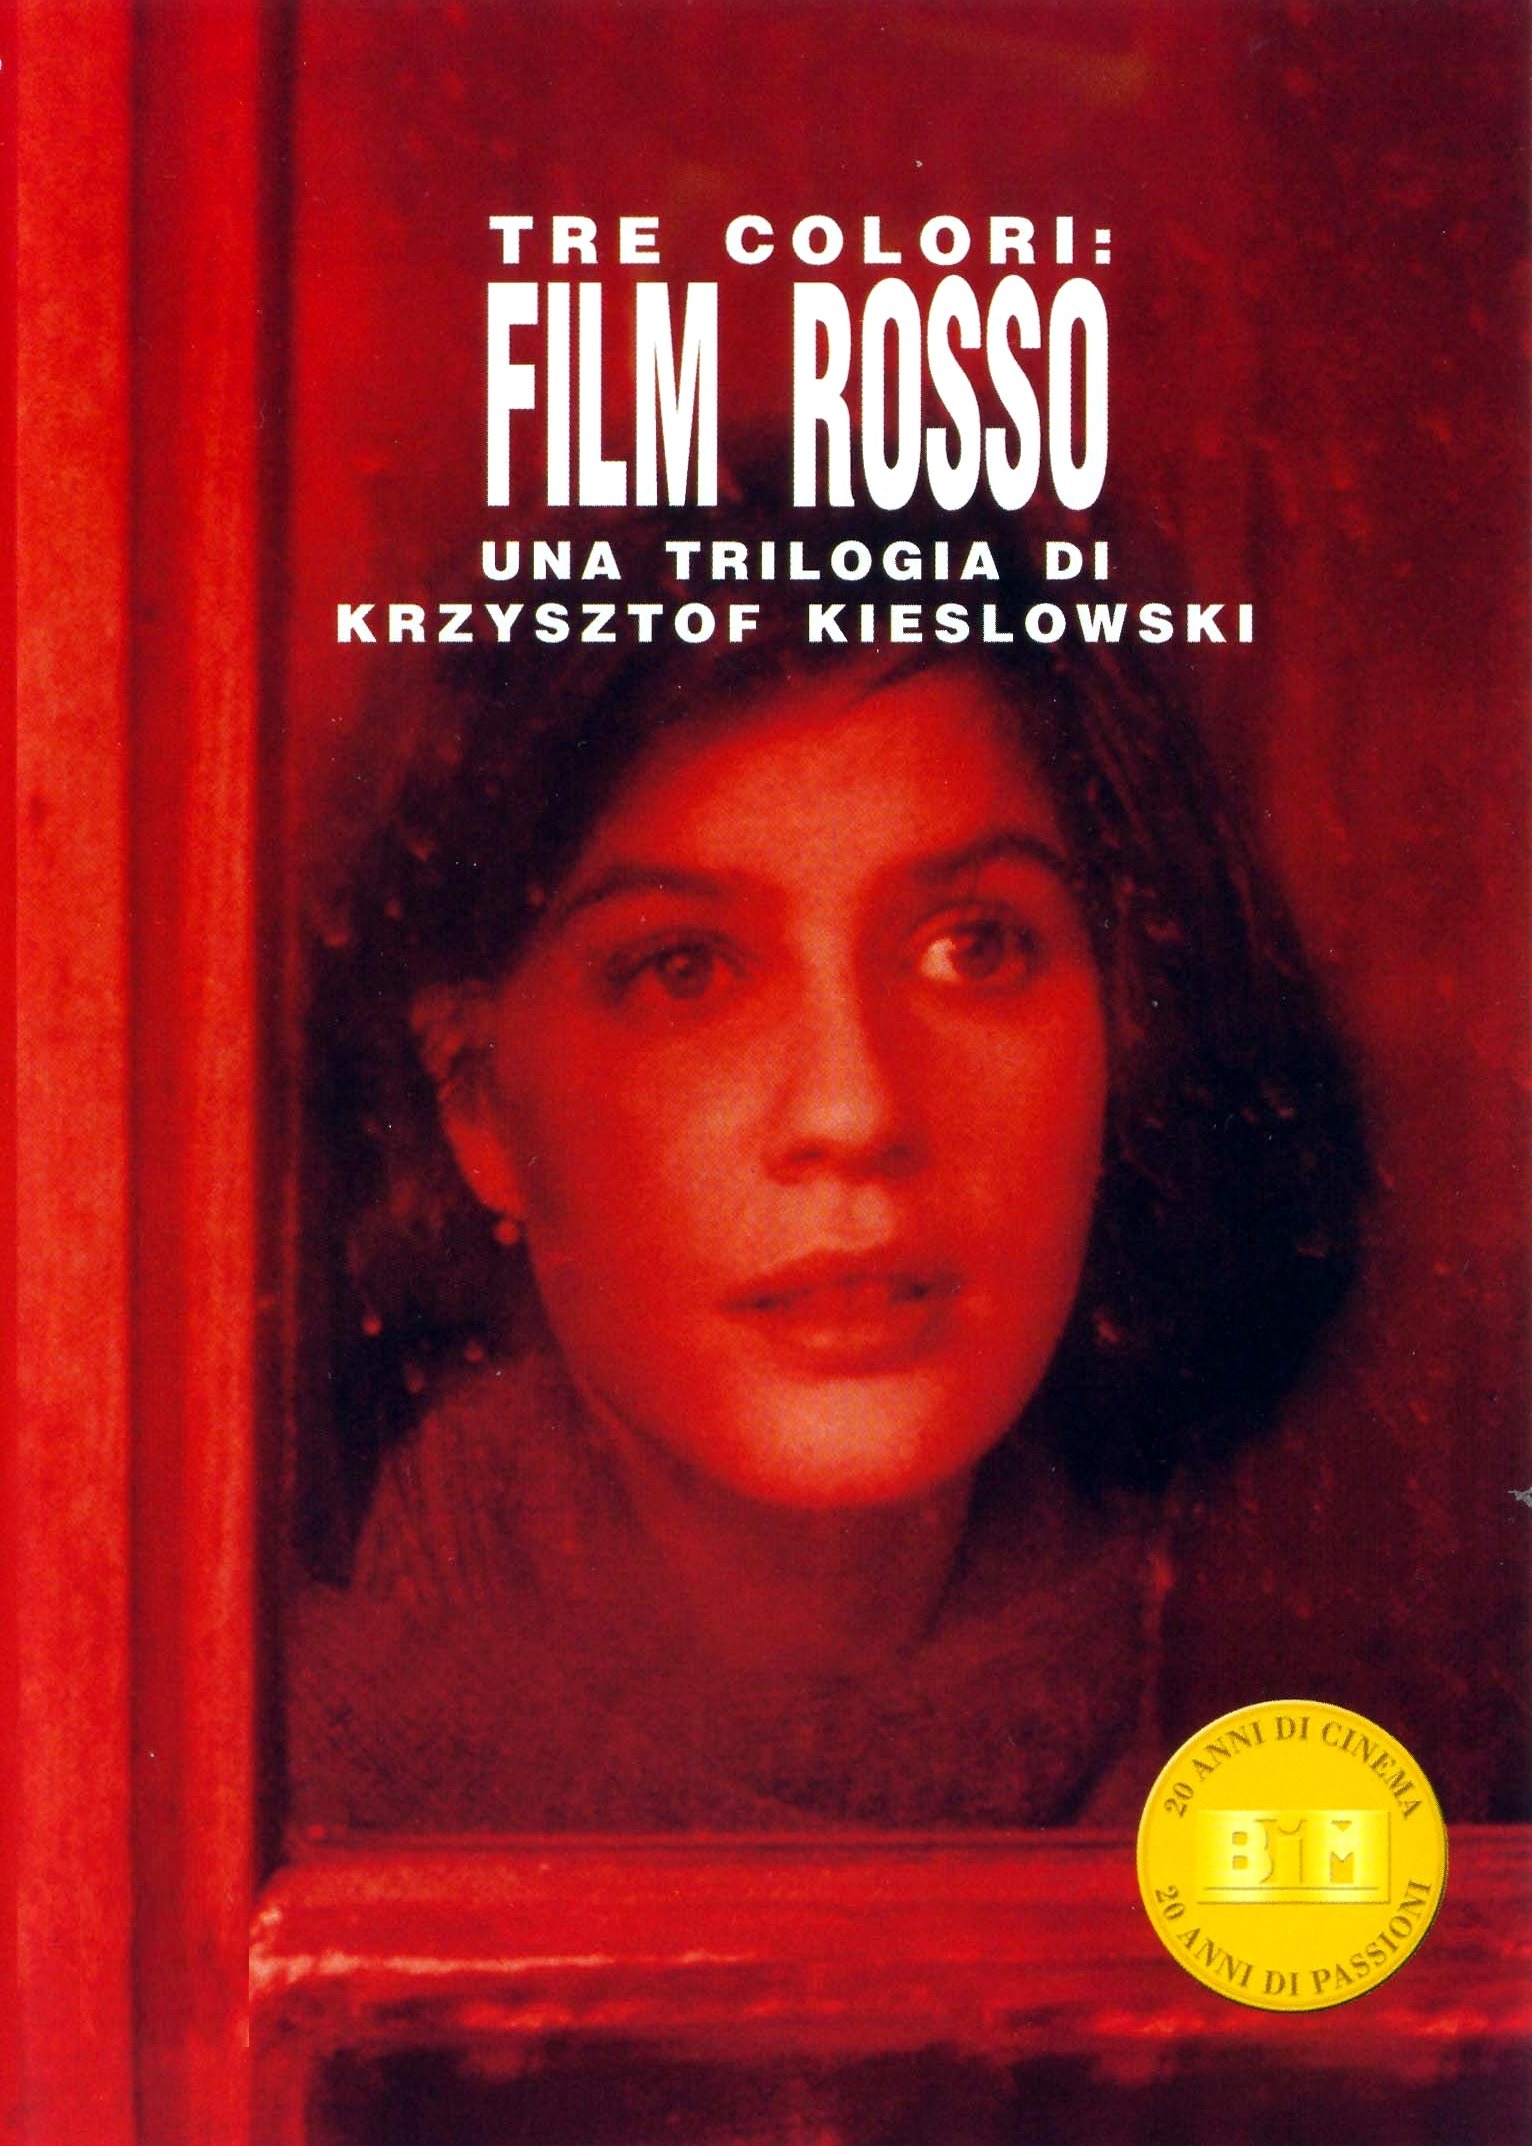 Tre colori: Film rosso [HD] (1994)